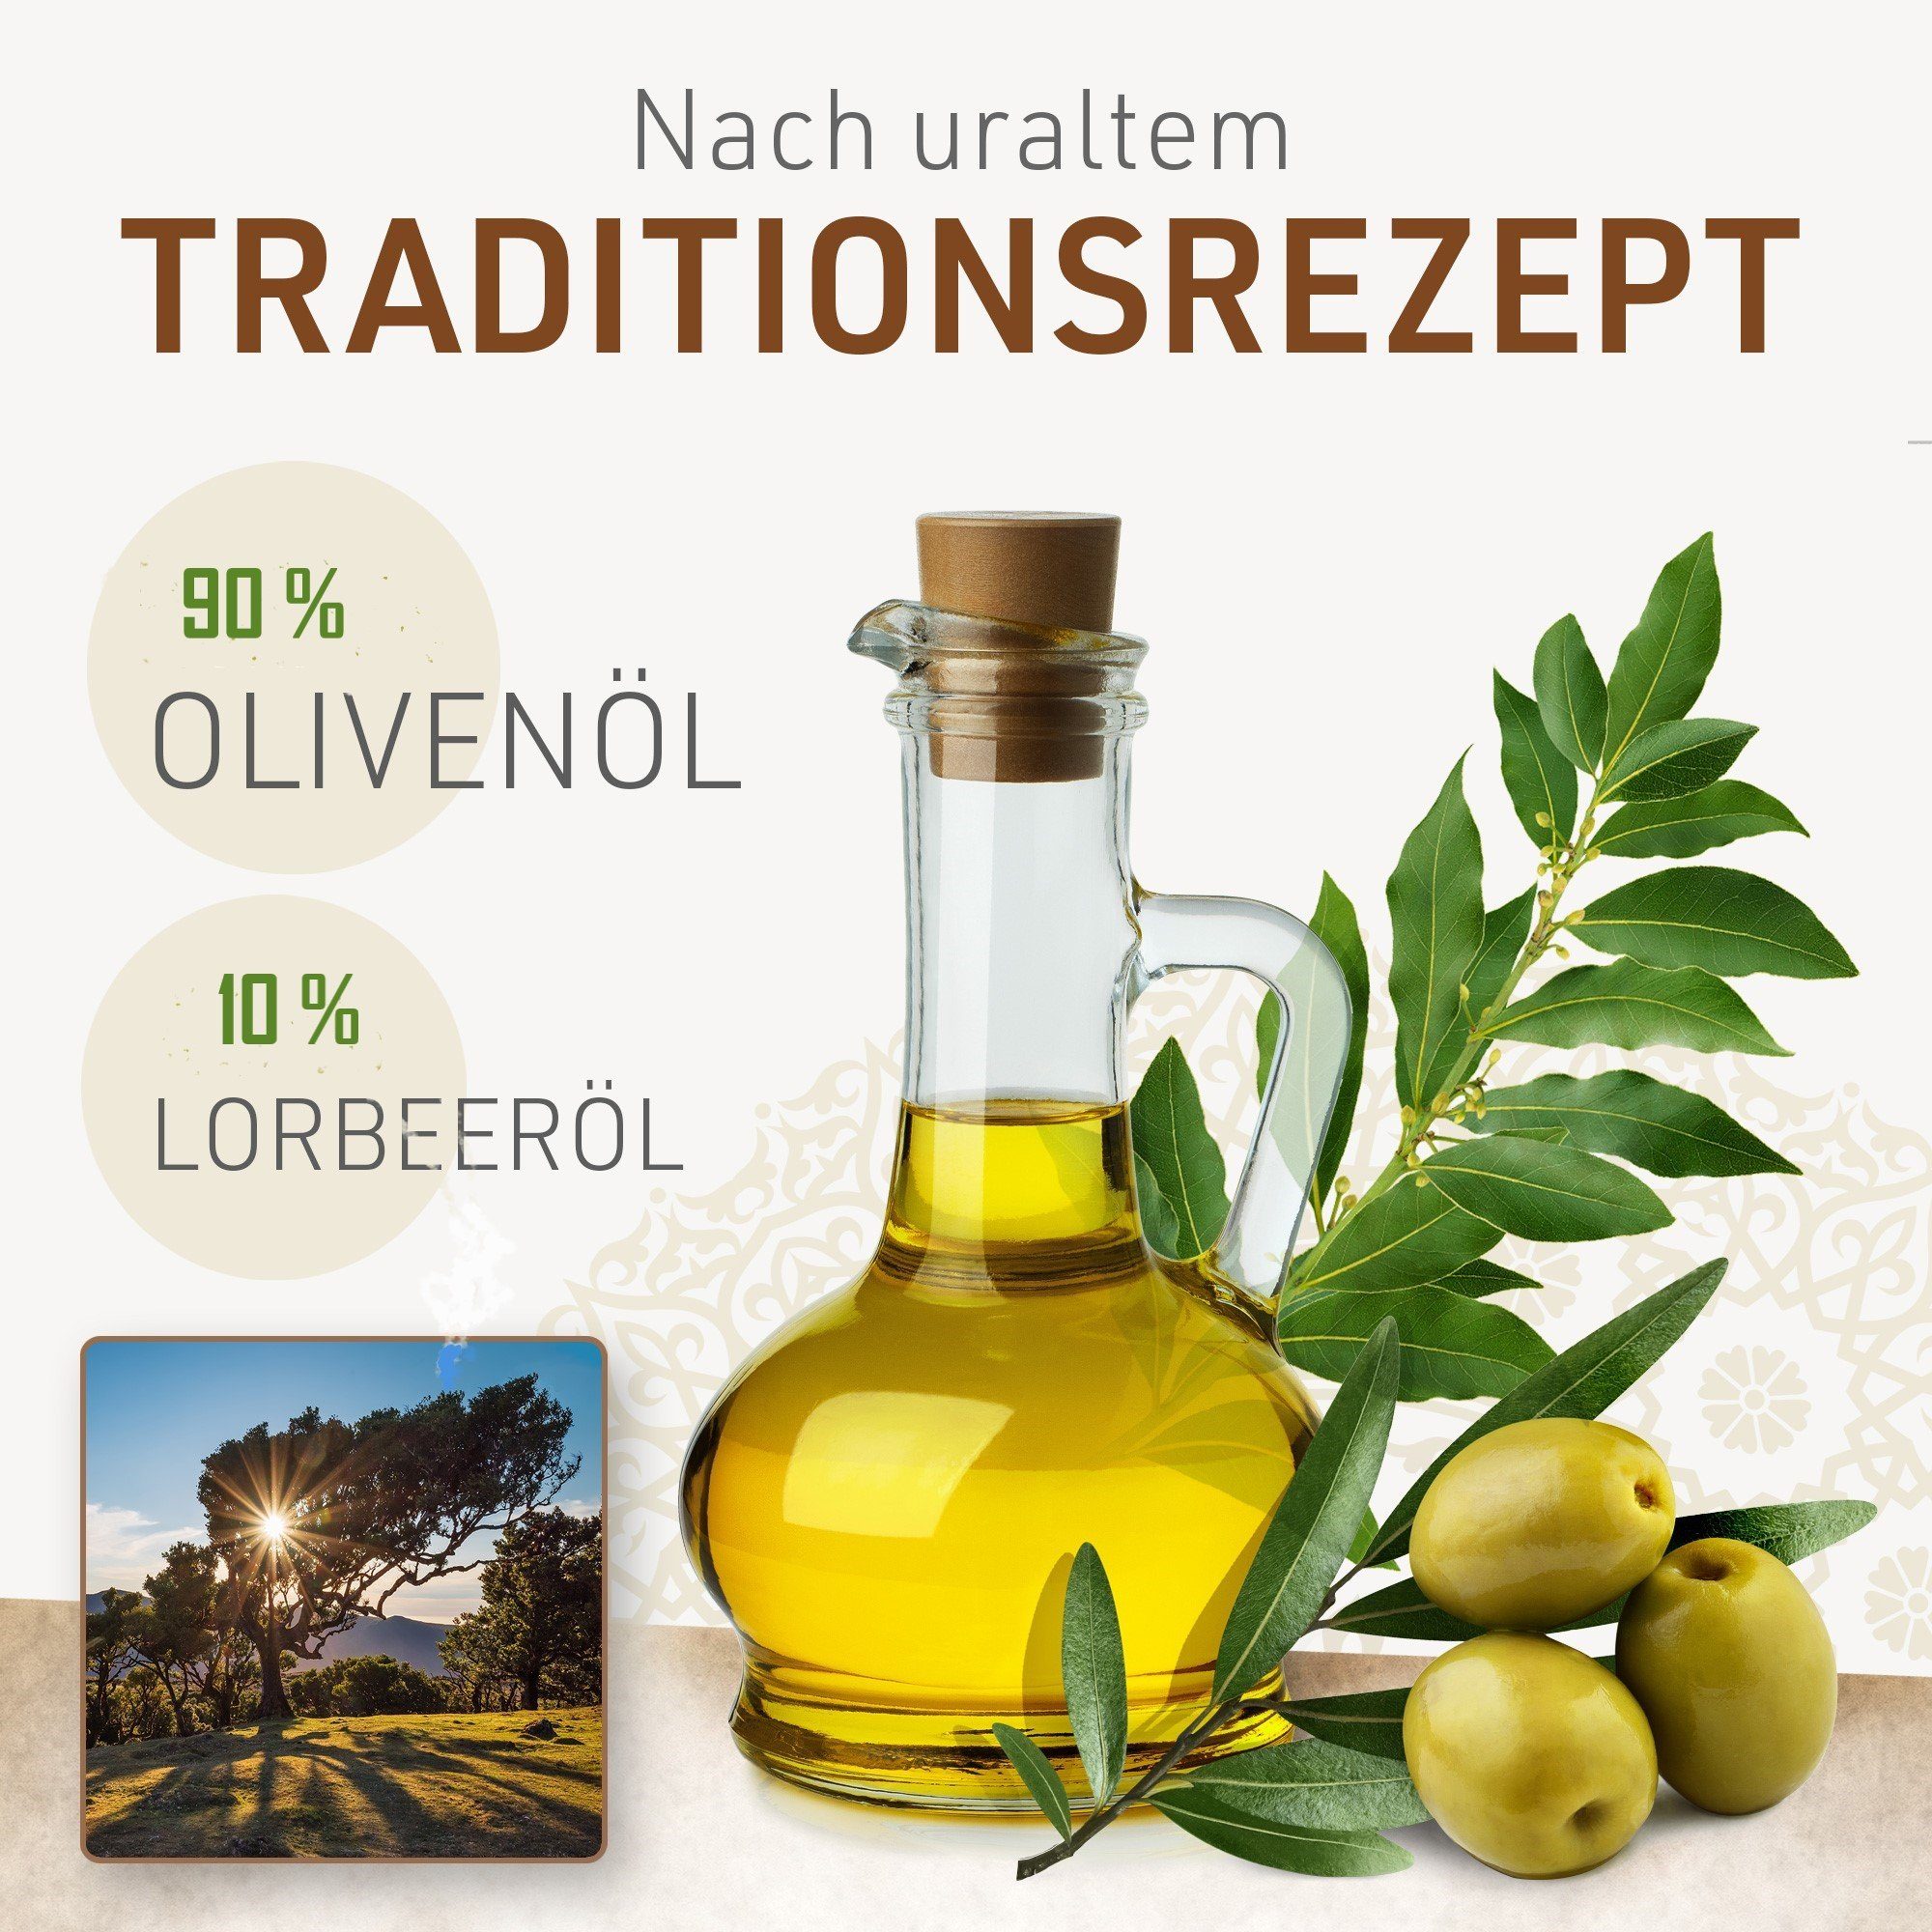 90% X Jumana originale Lorbeeröl Alepposeife, Olivenöl, 10% 200 g - Feste 1 Jumana Duschseife